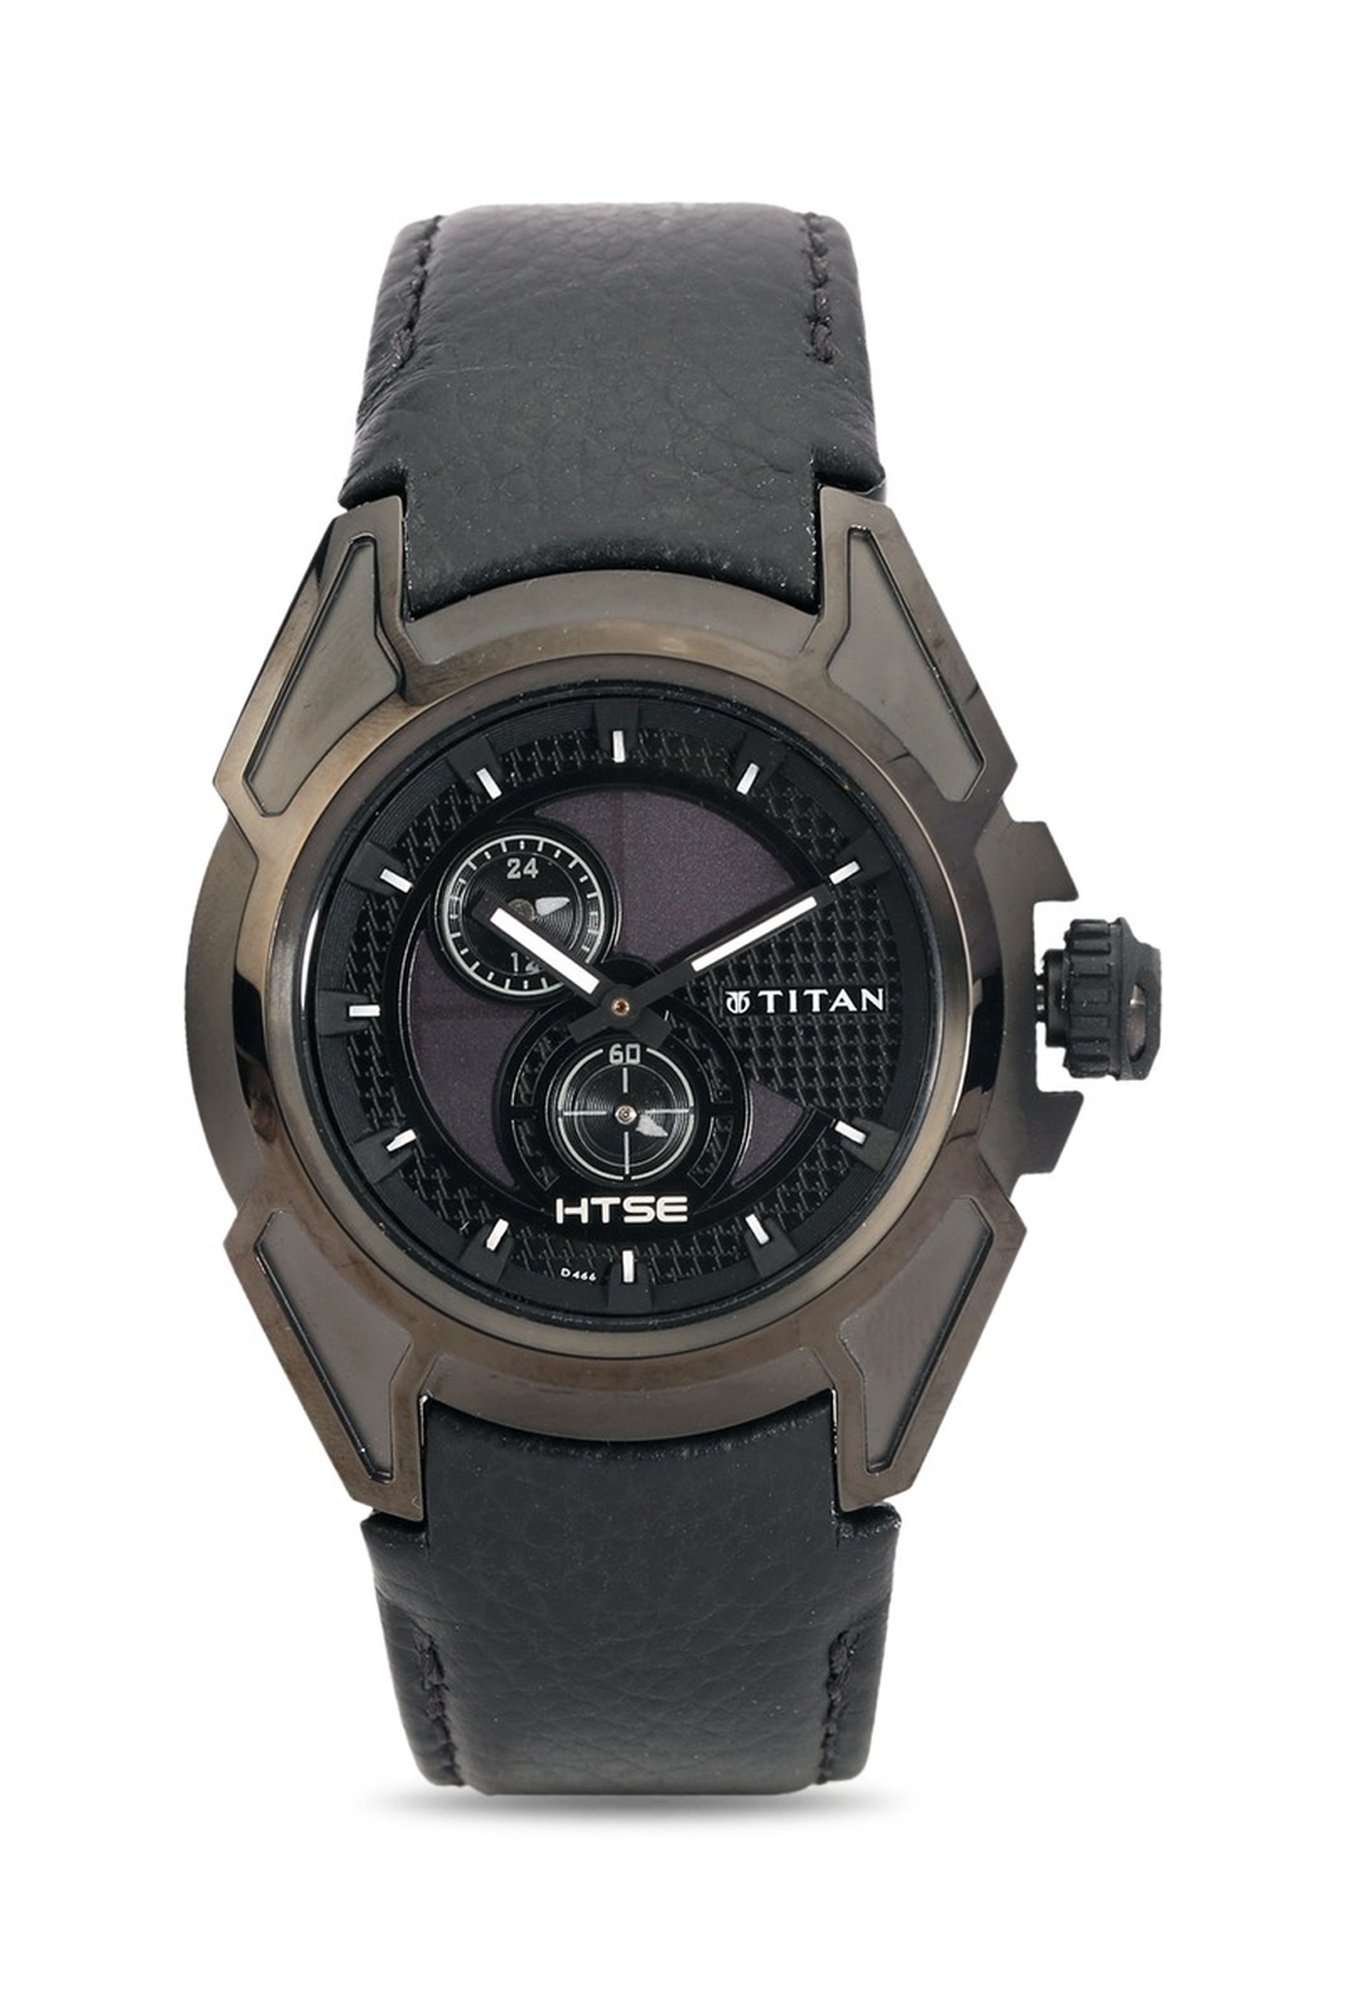 Titan NE1573KL03 HTSE Analog Watch - For Men - Buy Titan NE1573KL03 HTSE  Analog Watch - For Men NE1573KL03 Online at Best Prices in India |  Flipkart.com